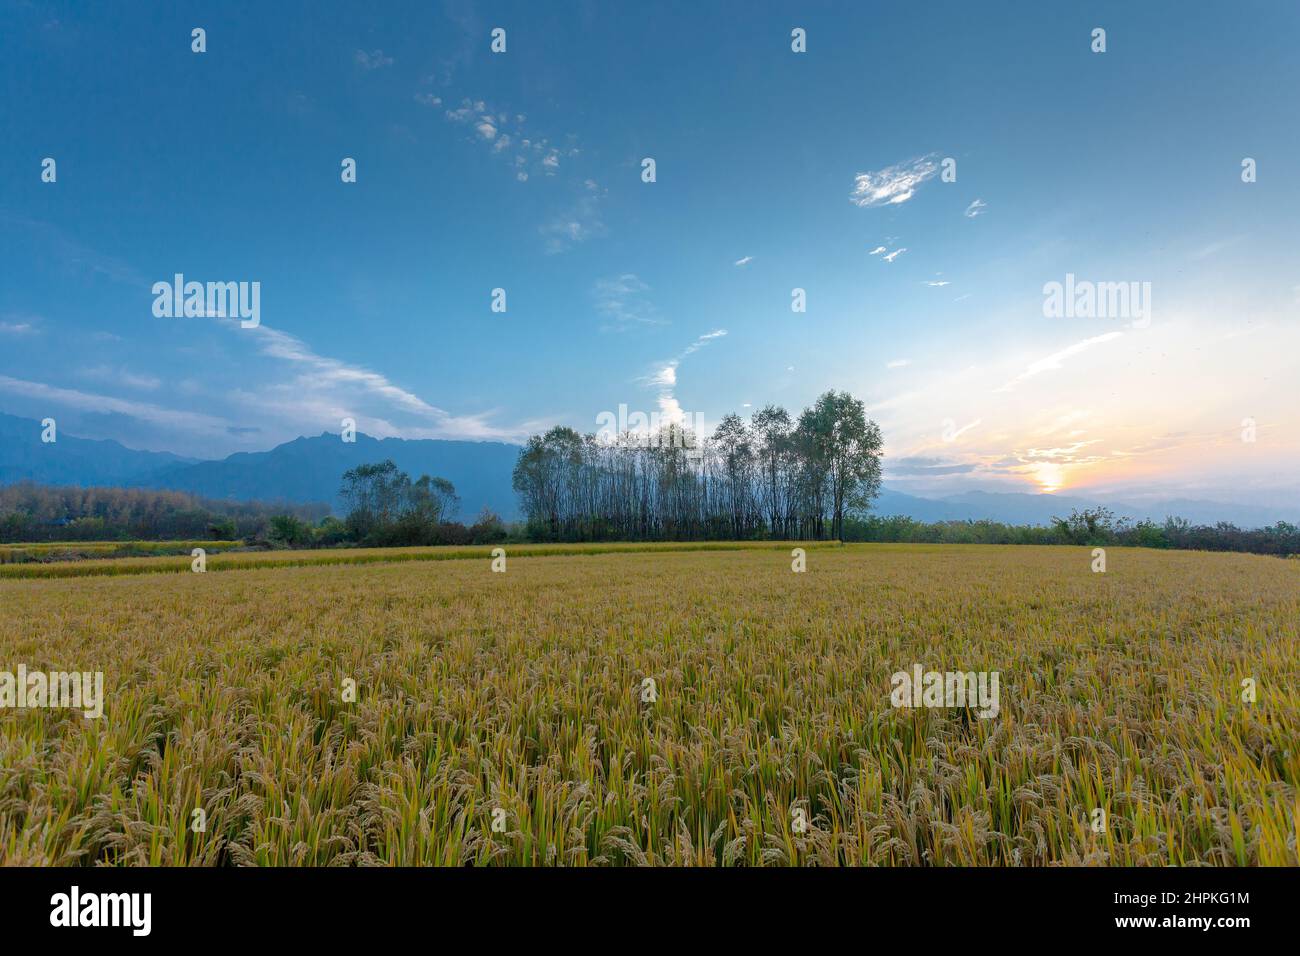 Shaanxi qinling mountain rice paddies Stock Photo